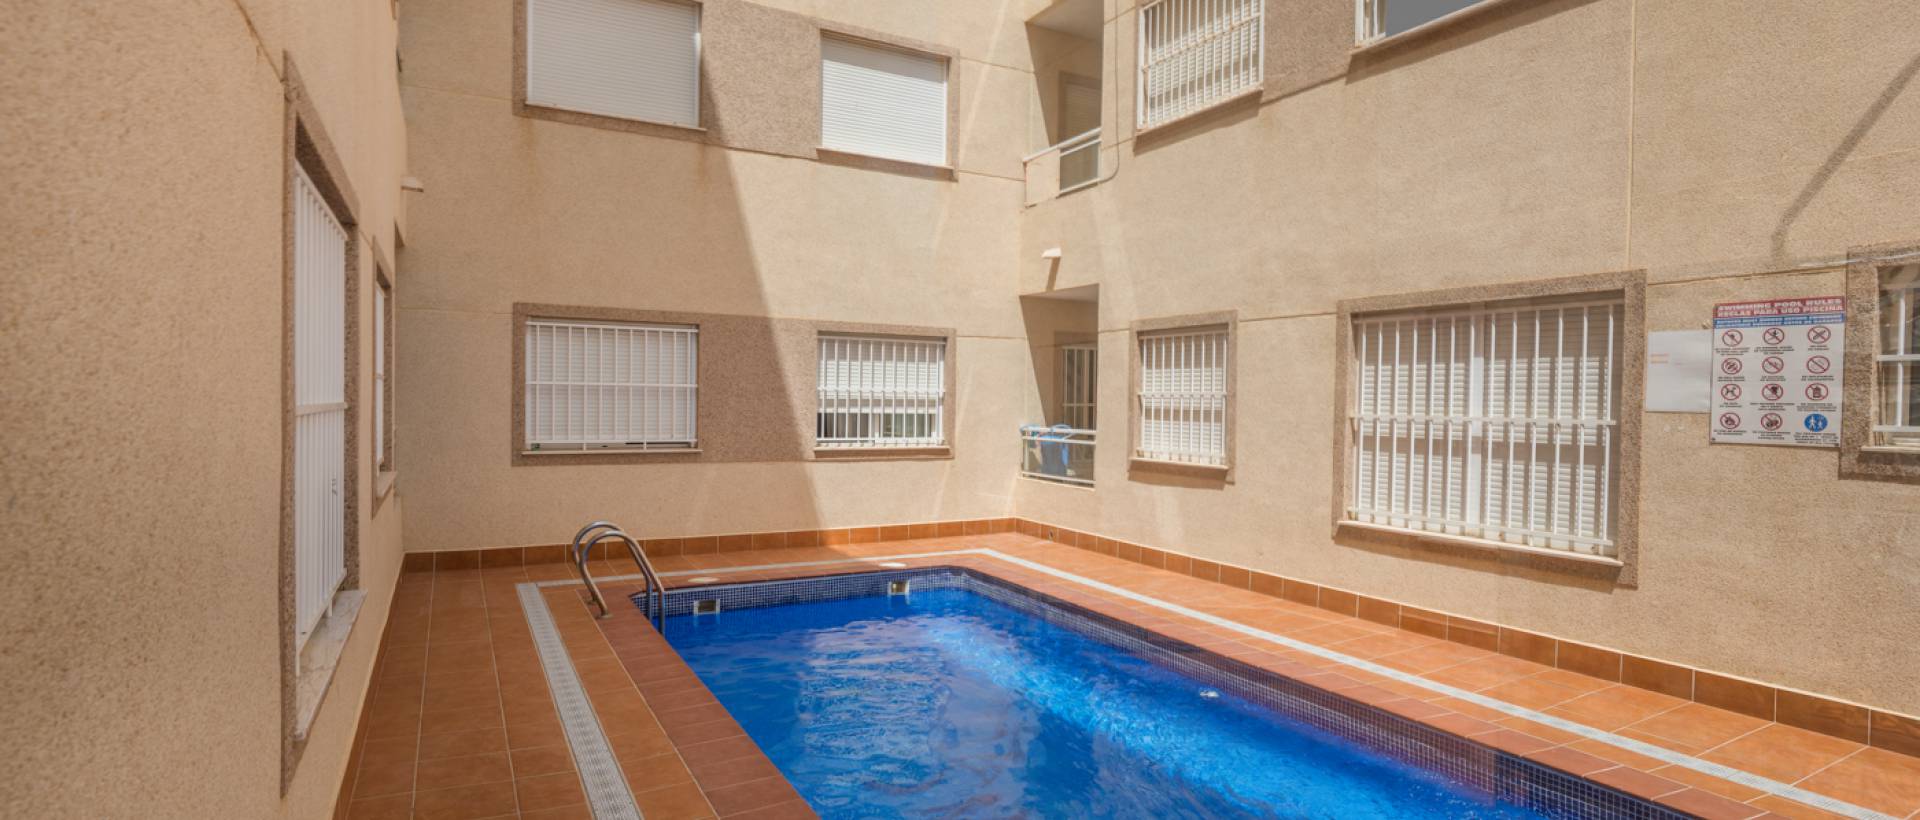 Piscina | Apartamento con piscina en venta en Formentera